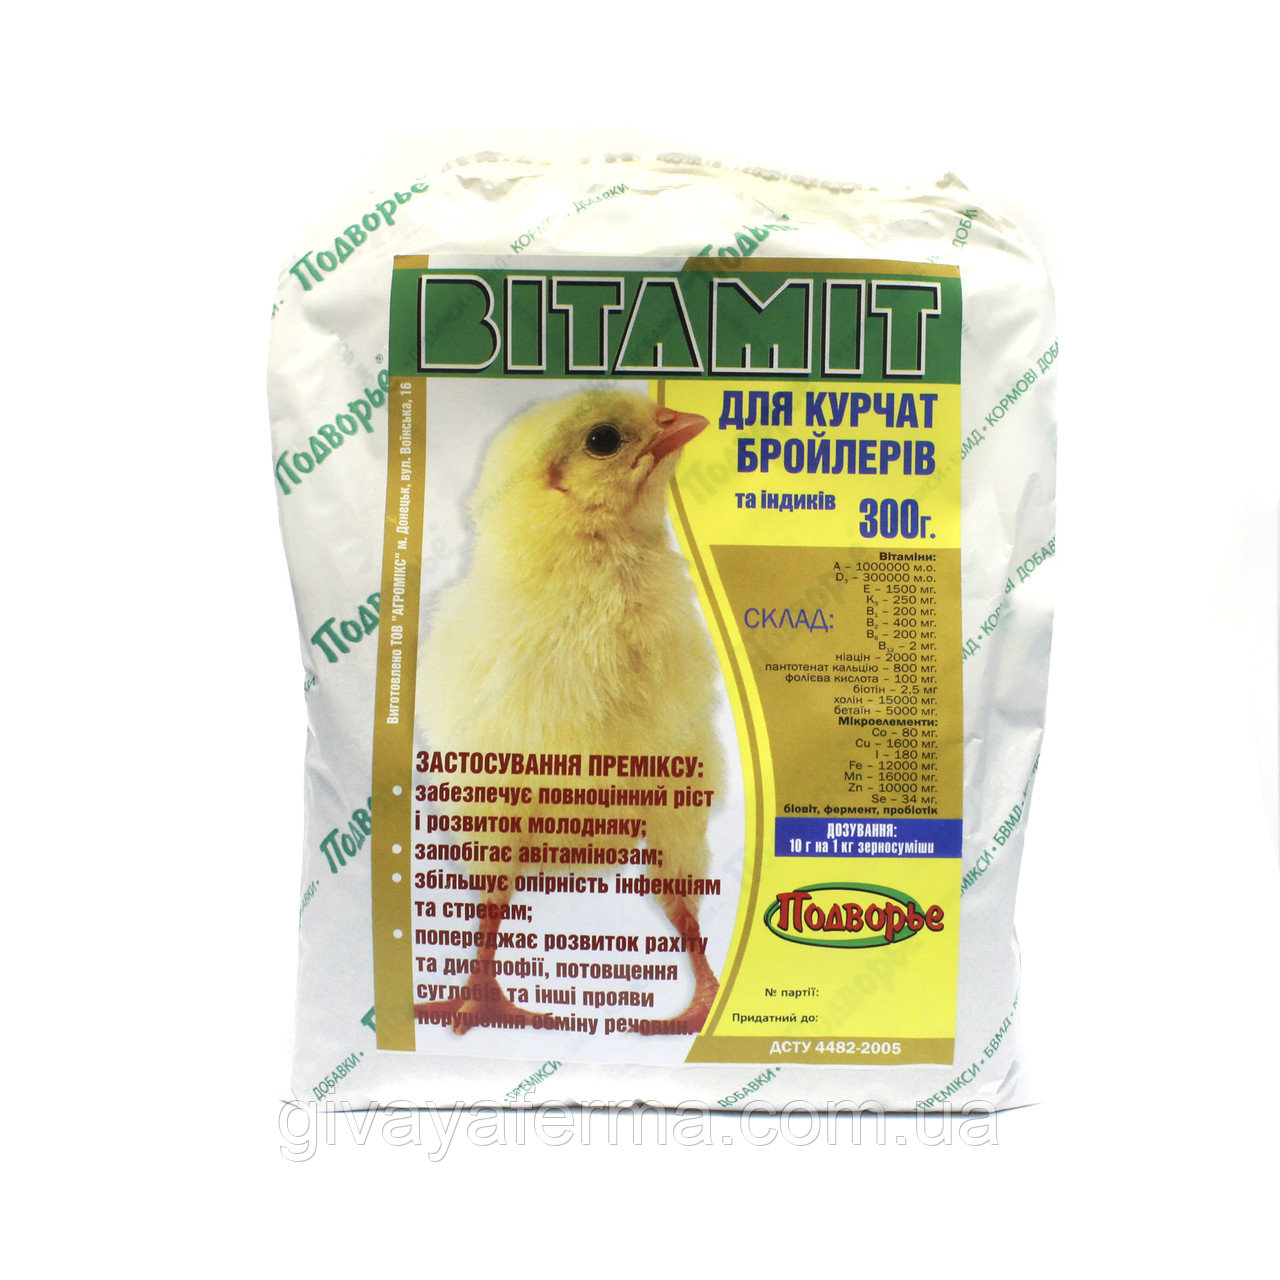 Витамины для цыплят: растворимые в воде и для смешивания с кормом. Как правильно давать, дозировка